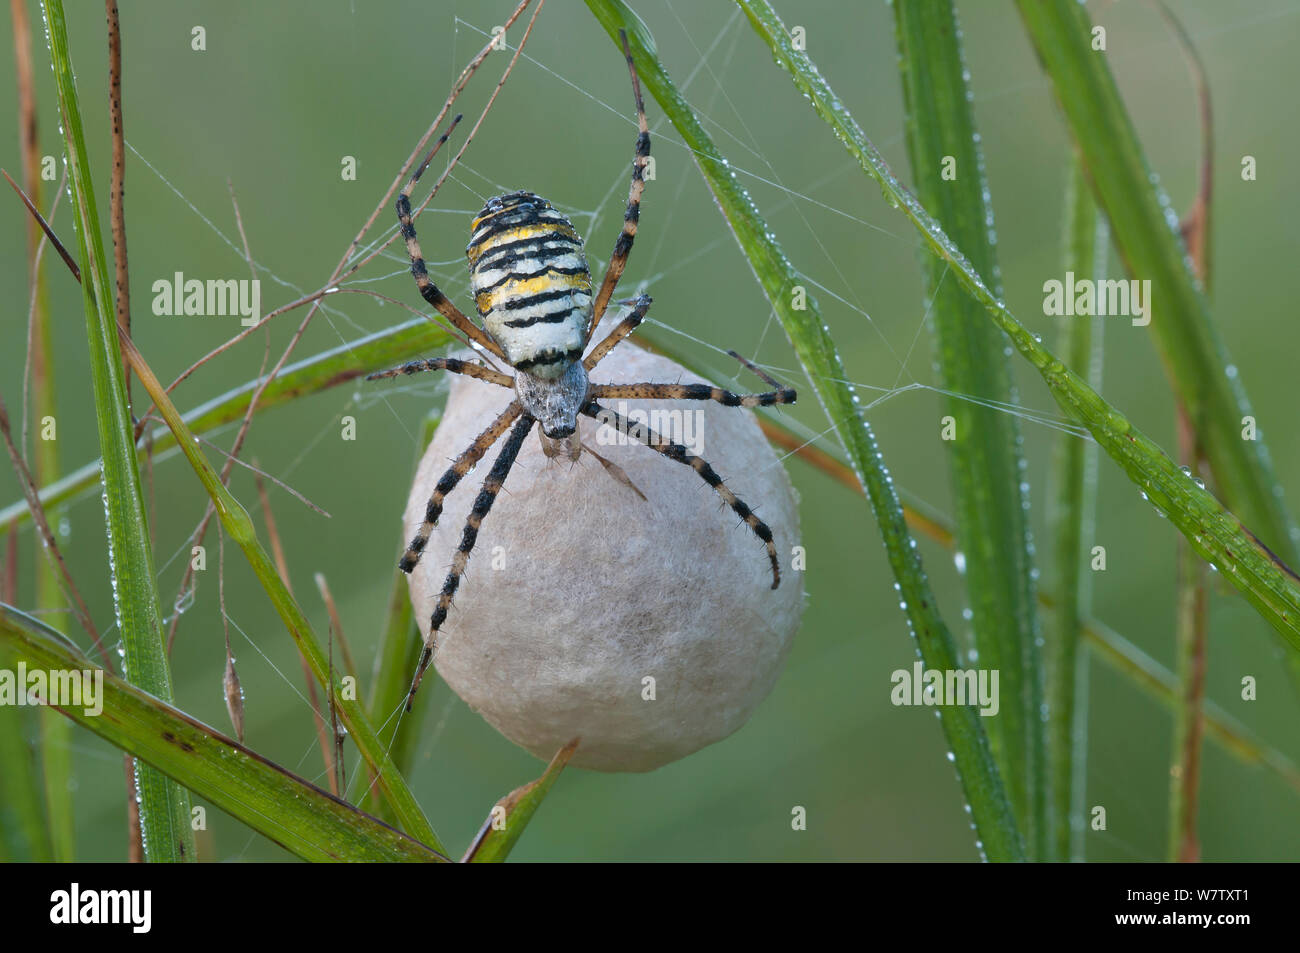 Wasp spider (Argiope bruennichi) with egg sac, Klein Schietveld, Brasschaat, Belgium Stock Photo